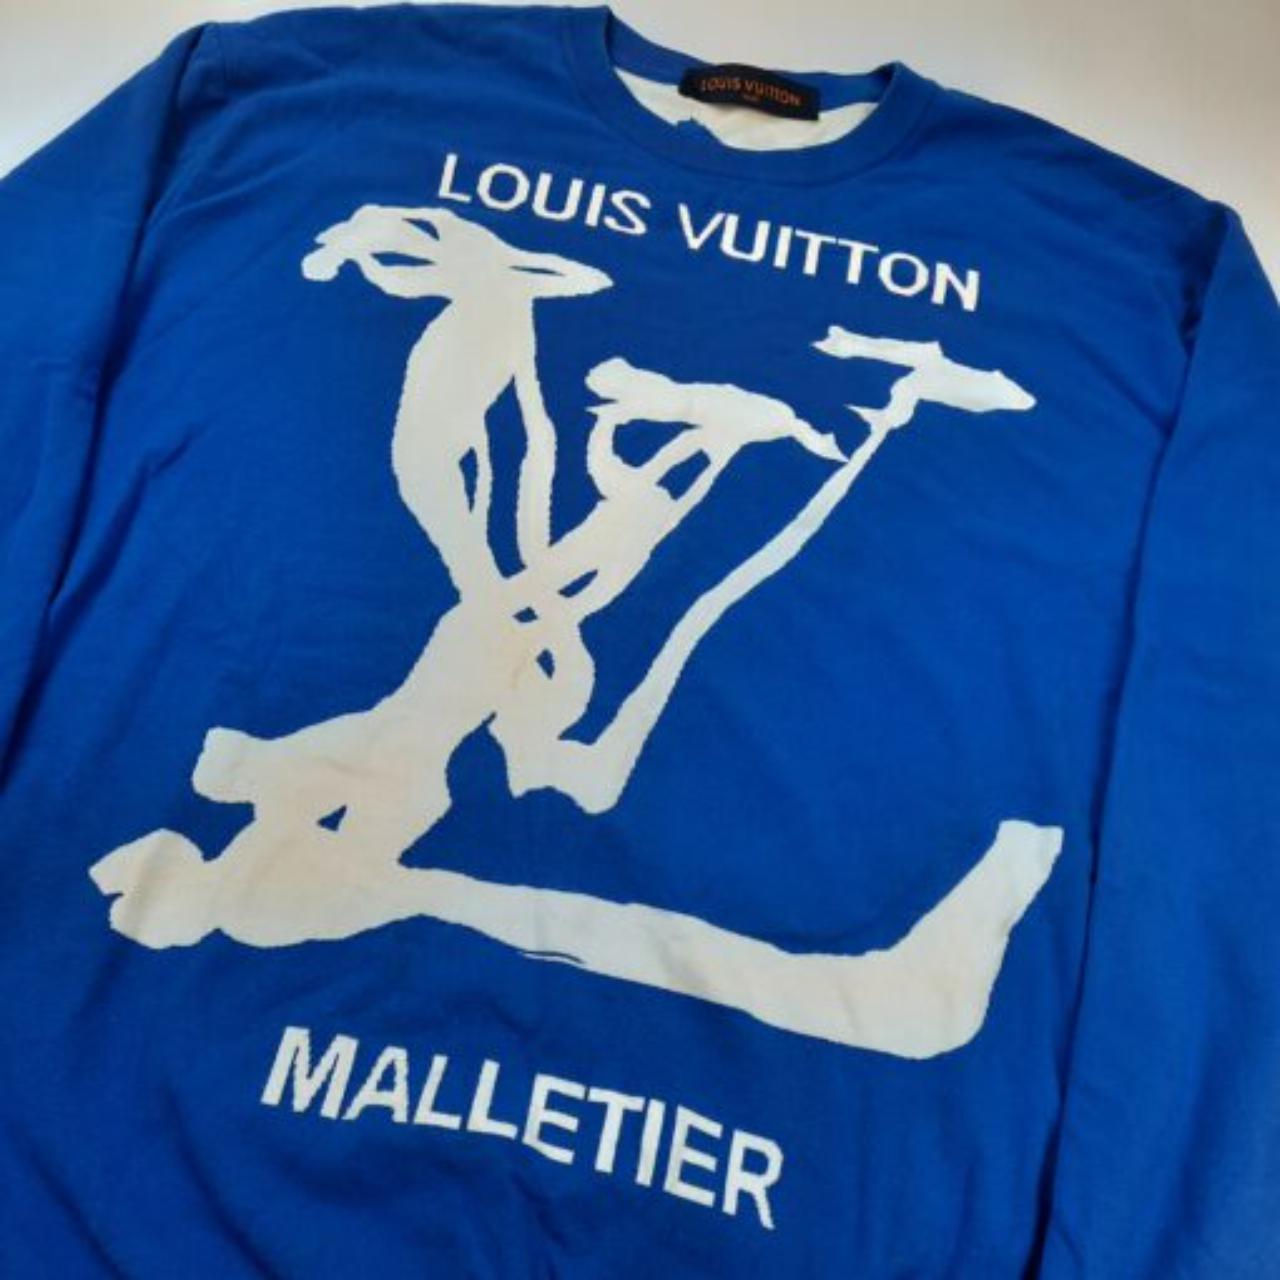 Louis Vuitton Malletier Clouds Crewneck - Depop